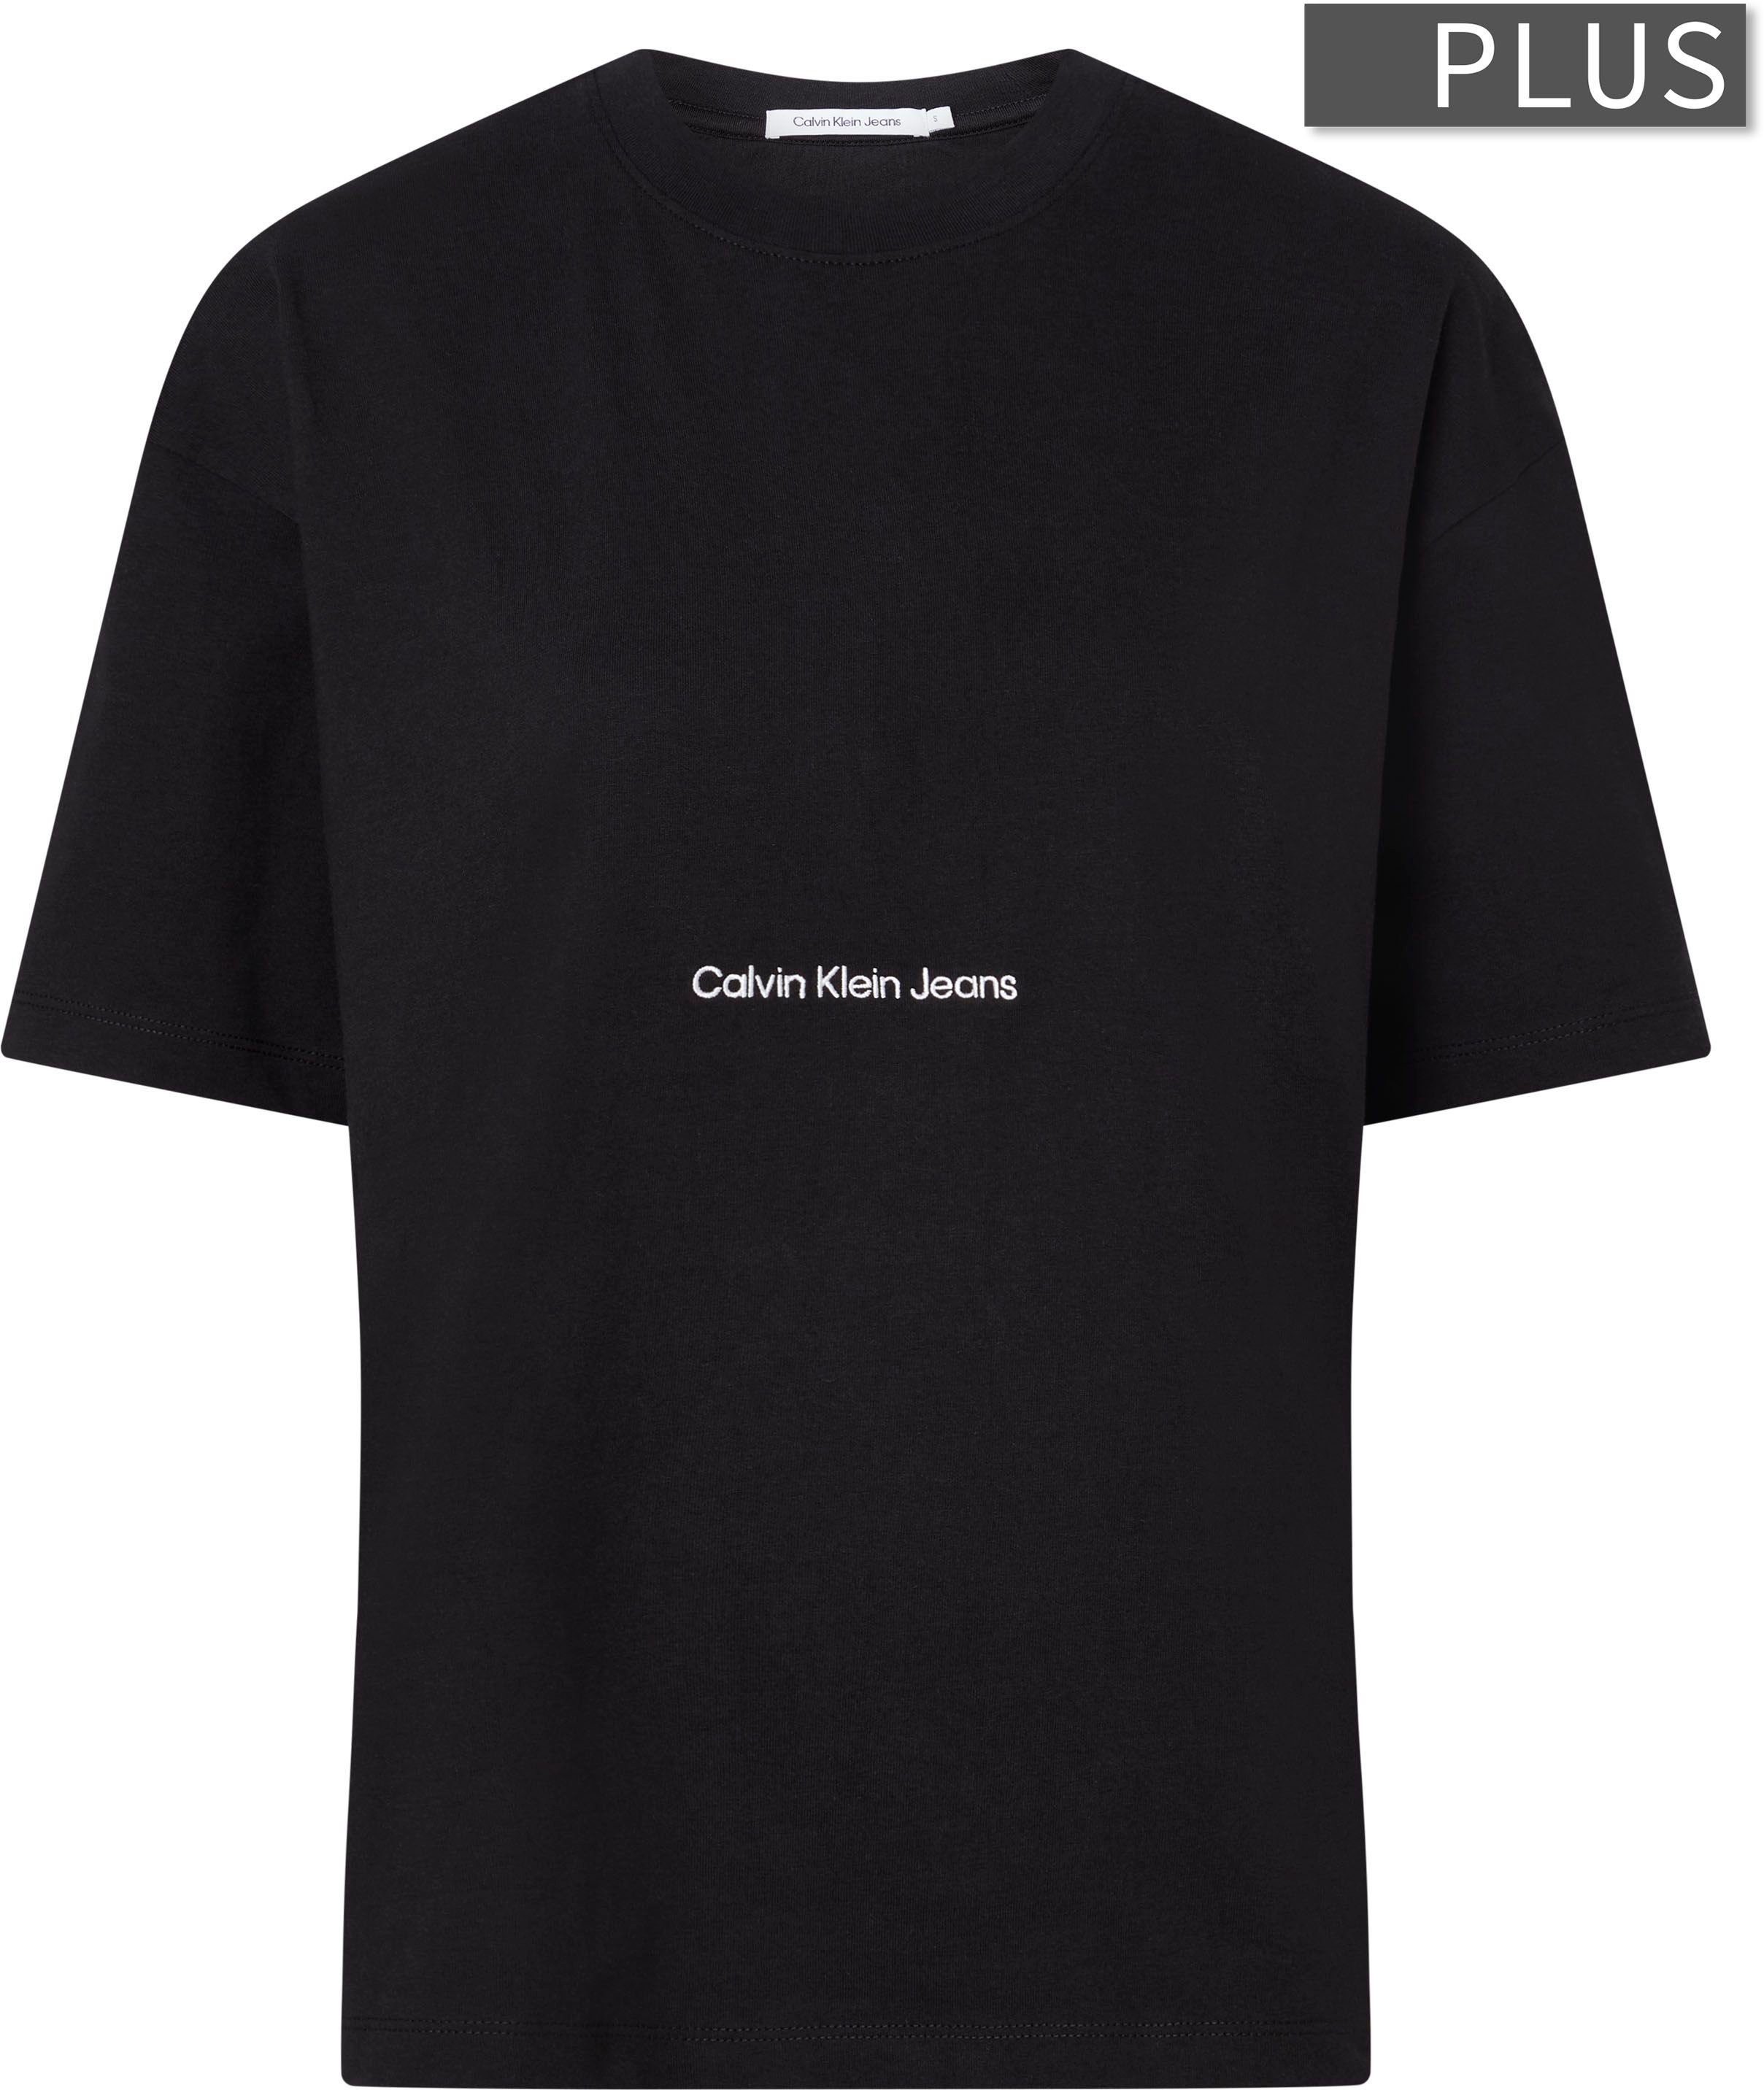 Calvin Klein Jeans Plus T-Shirt schwarz Rundhalsausschnitt mit